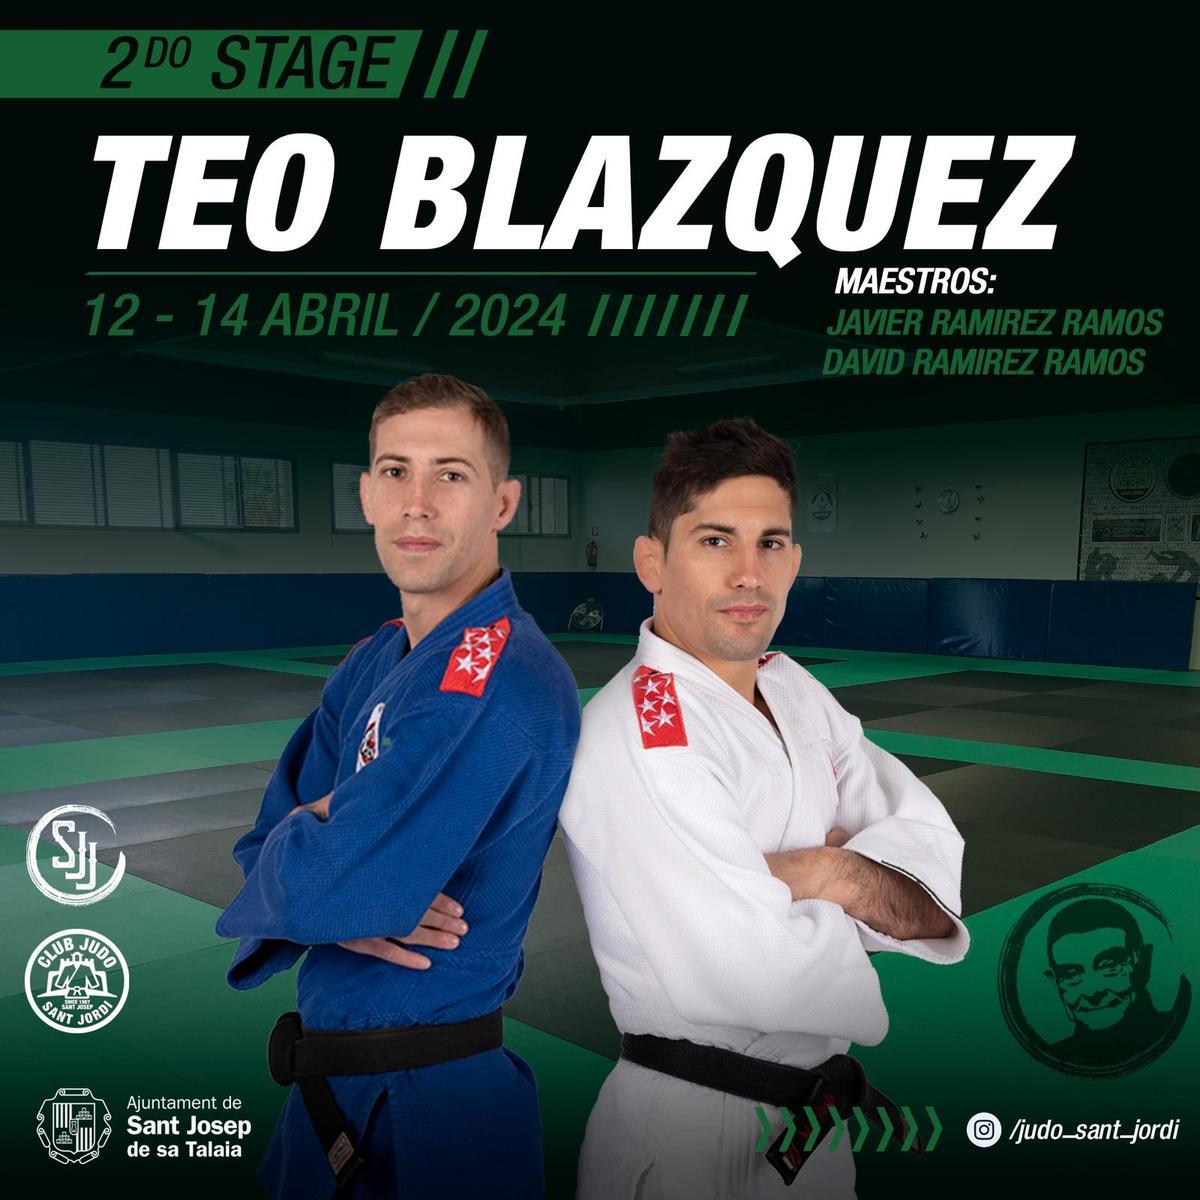 Los hermanos Ramírez acudirán al evento en honor a Teo Blázquez